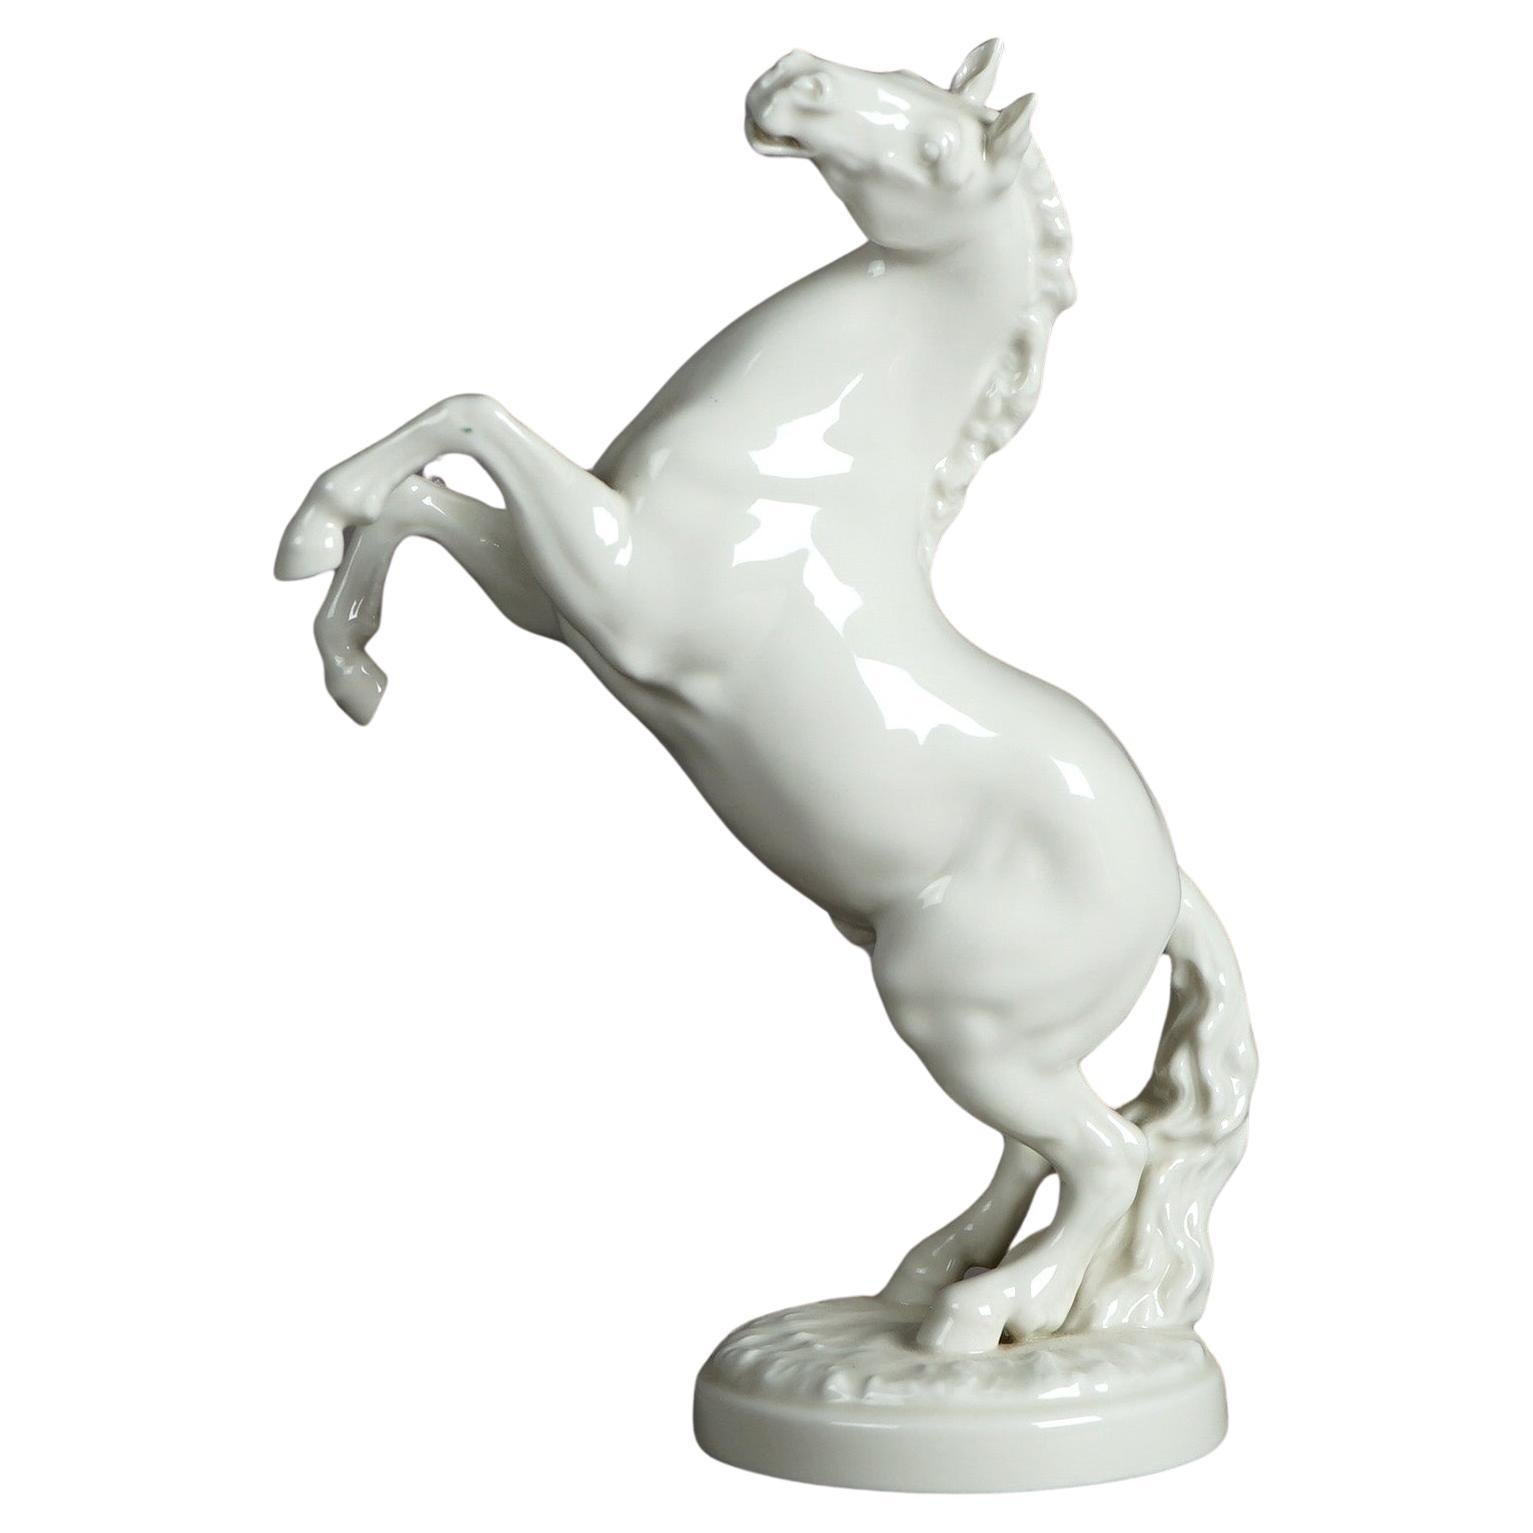 Antique Figural German Hutschenreuther Porcelain Horse Figure C1930